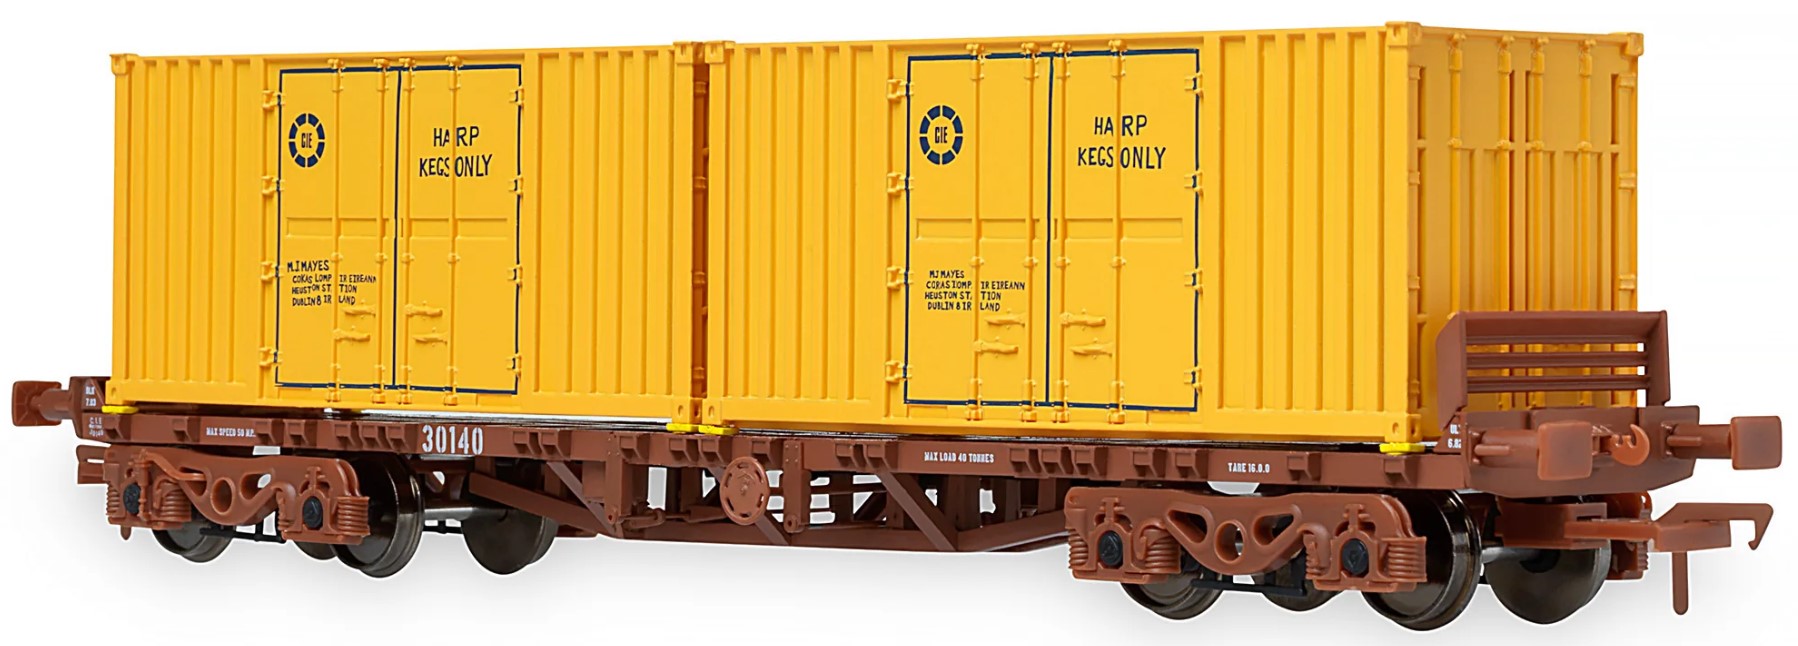 Irish Railway Models OO Gauge (1:76 Scale) 42ft container flats